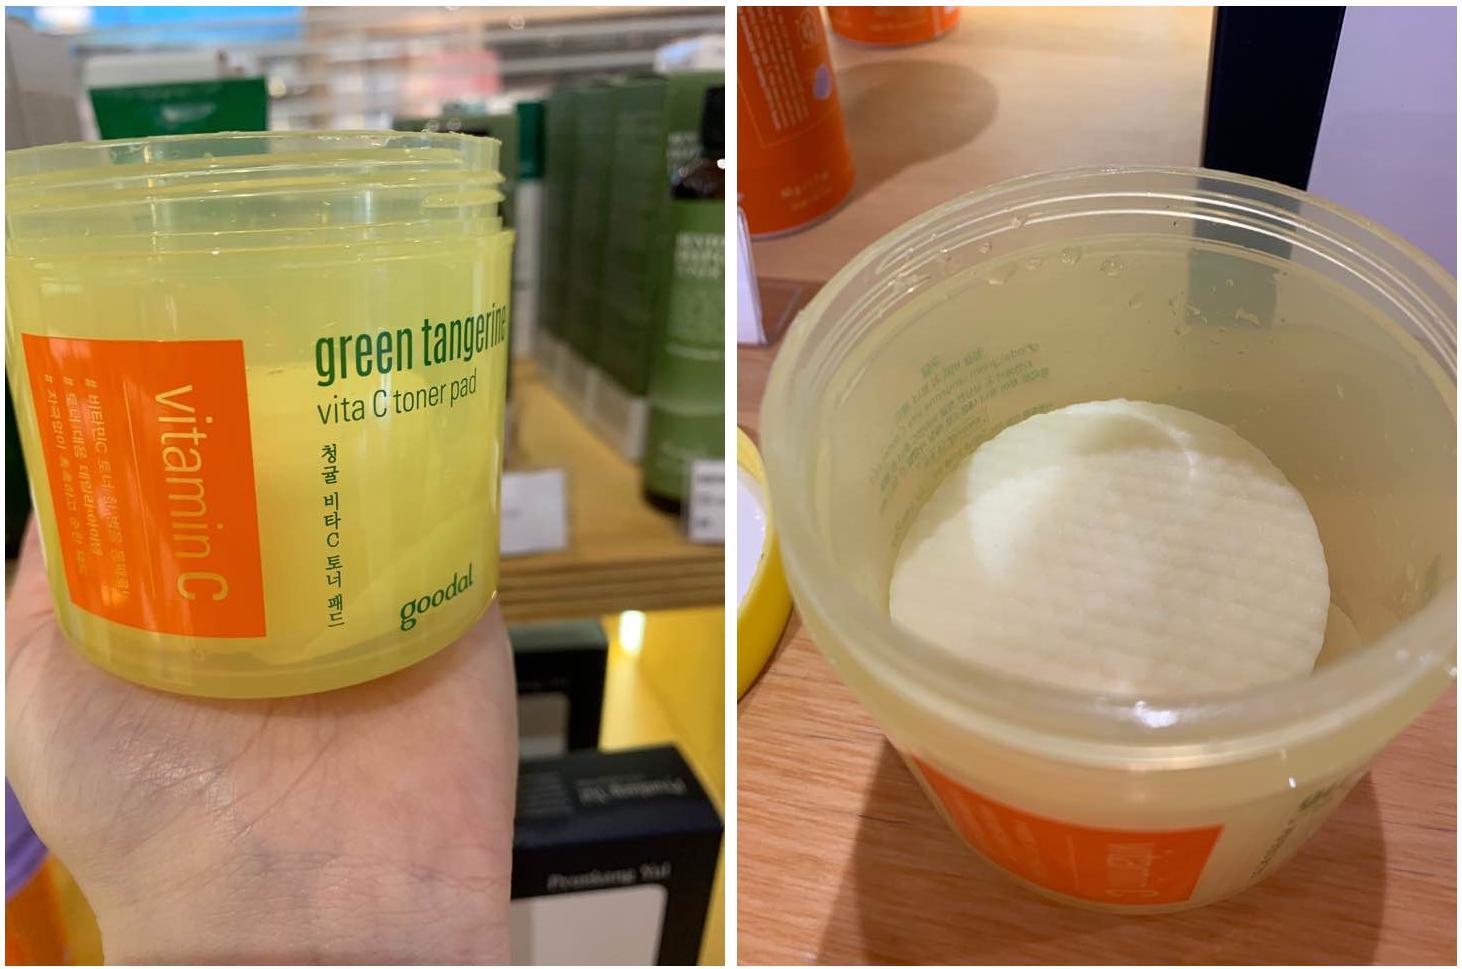 Goodal Green Tangerine Vita C Toner Pads Facial Skincare Korean Yellow